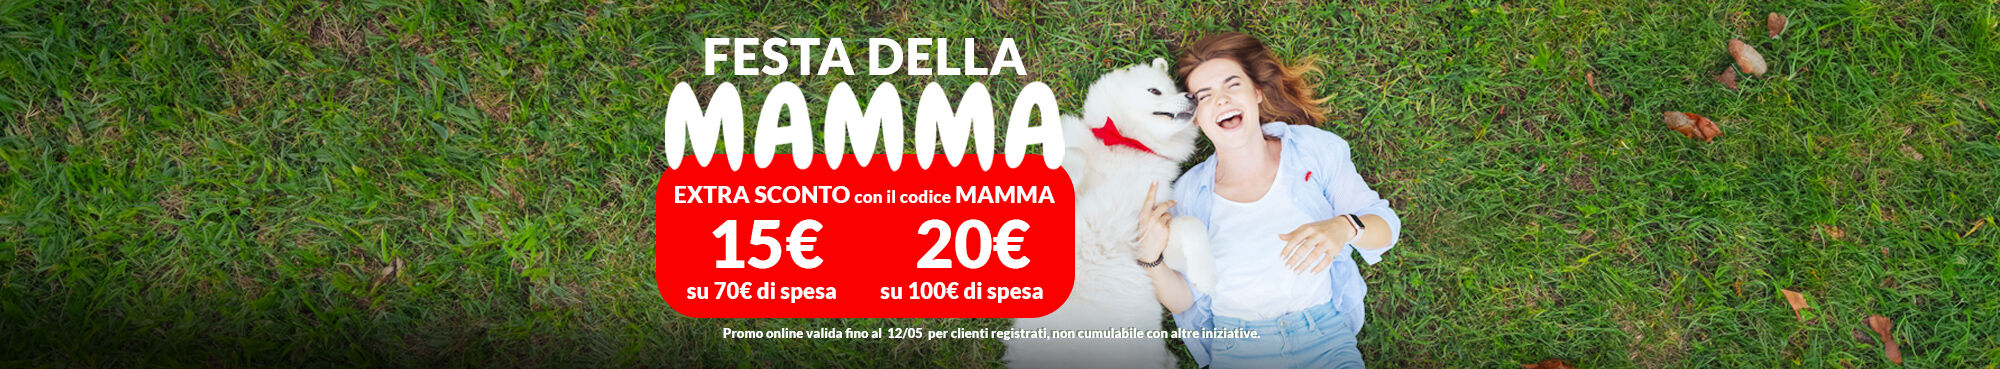 EXTRA SCONTO DI 15€ su 70€ di spesa oppure di 20€ su 100€ di spesa, con il codice MAMMA! Affrettati, scade il 12/05!